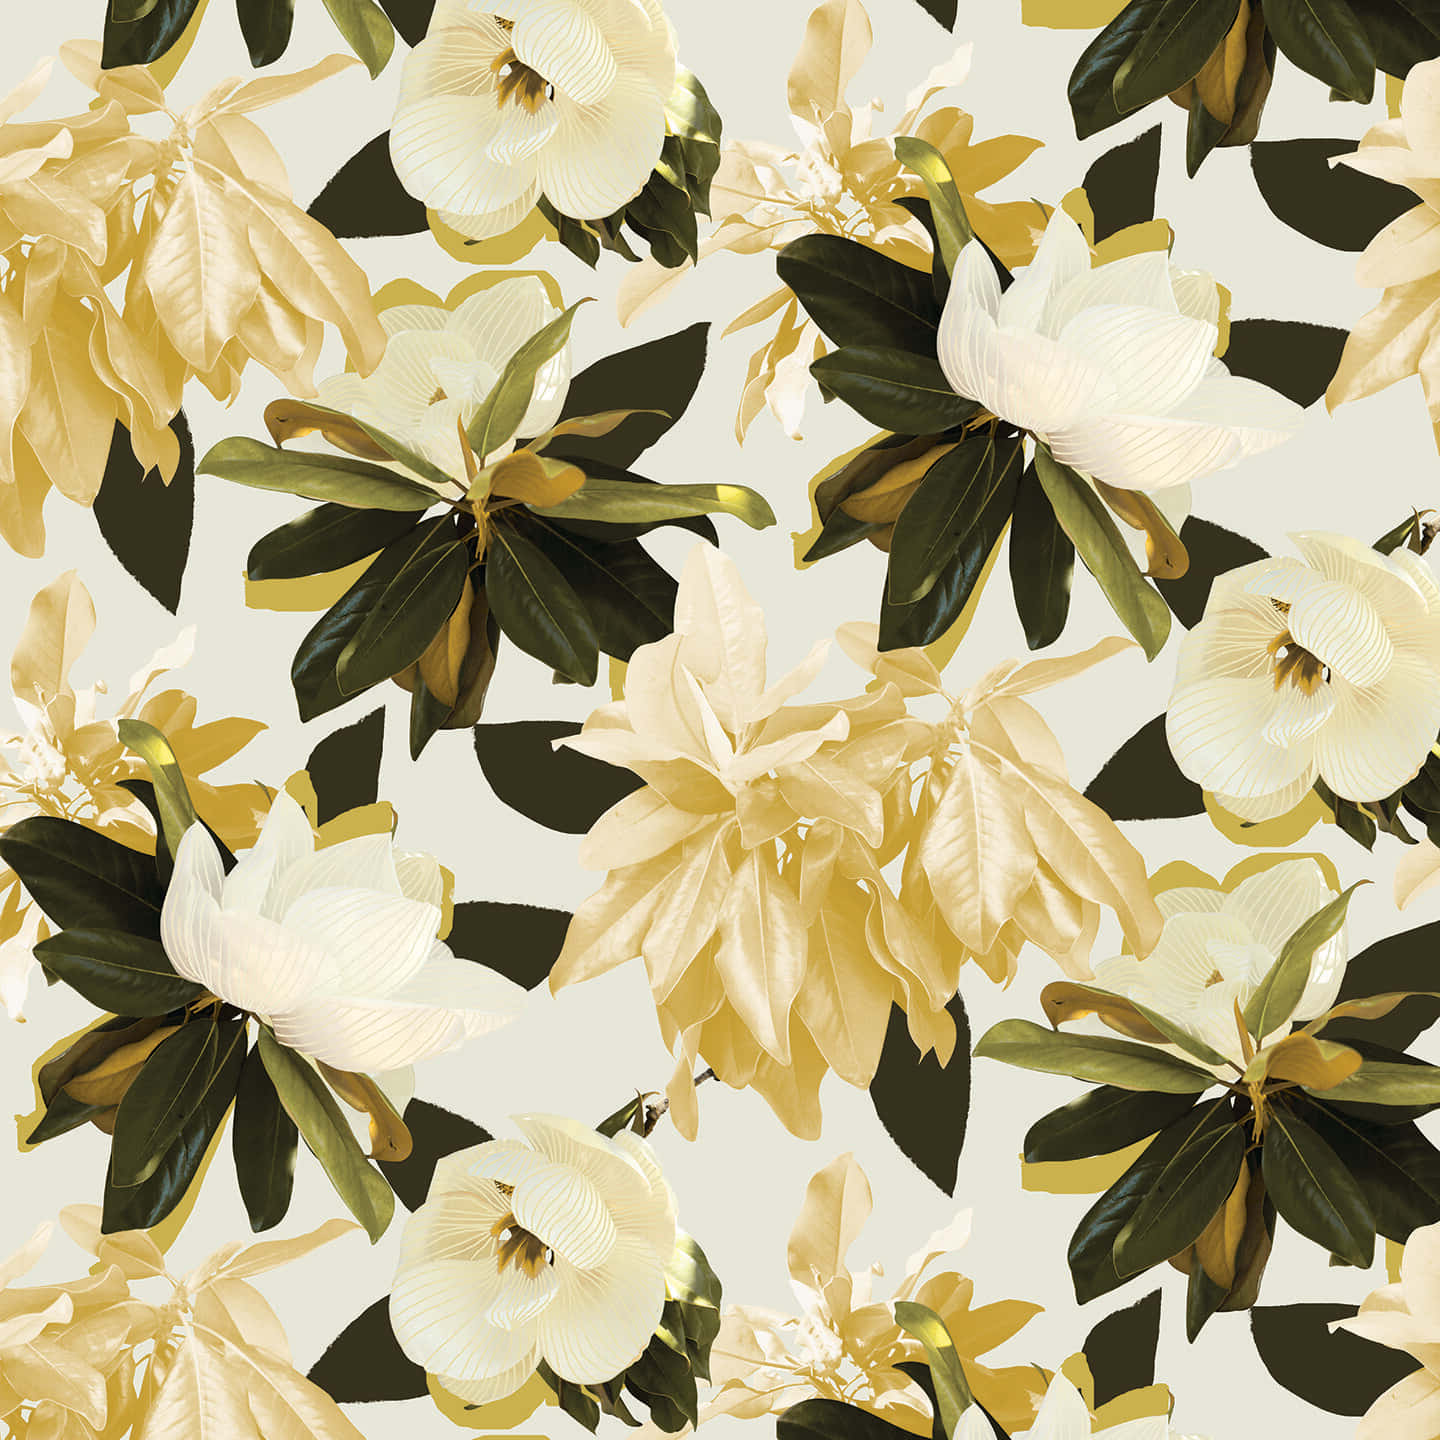 Patrónartístico De Impresión De Flores De Magnolia Fondo de pantalla